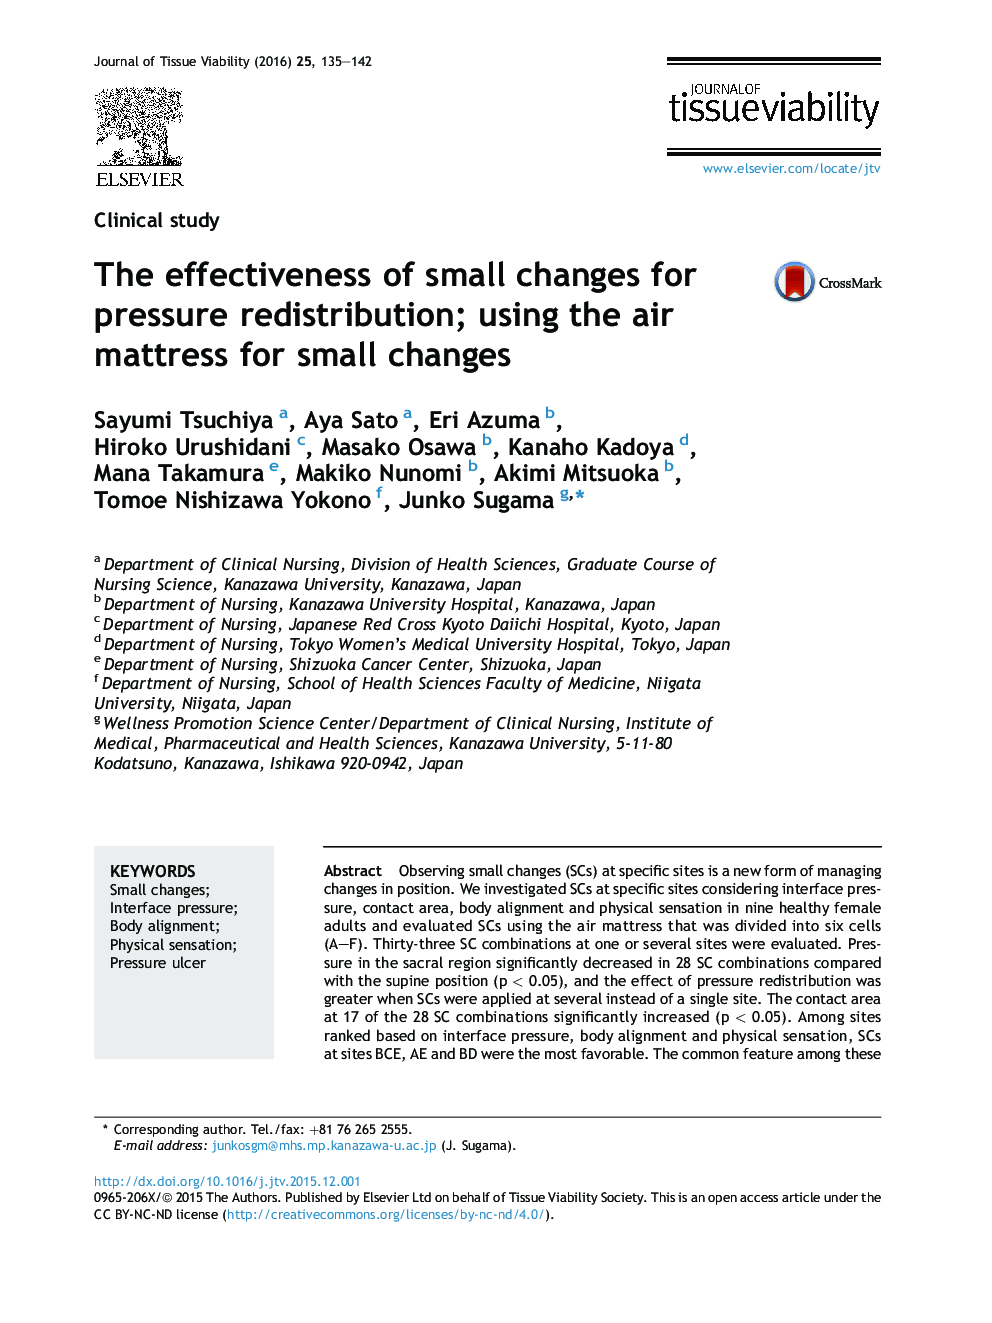 اثربخشی تغییرات کوچک برای توزیع فشار؛ با استفاده از تشک هوا برای تغییرات کوچک 